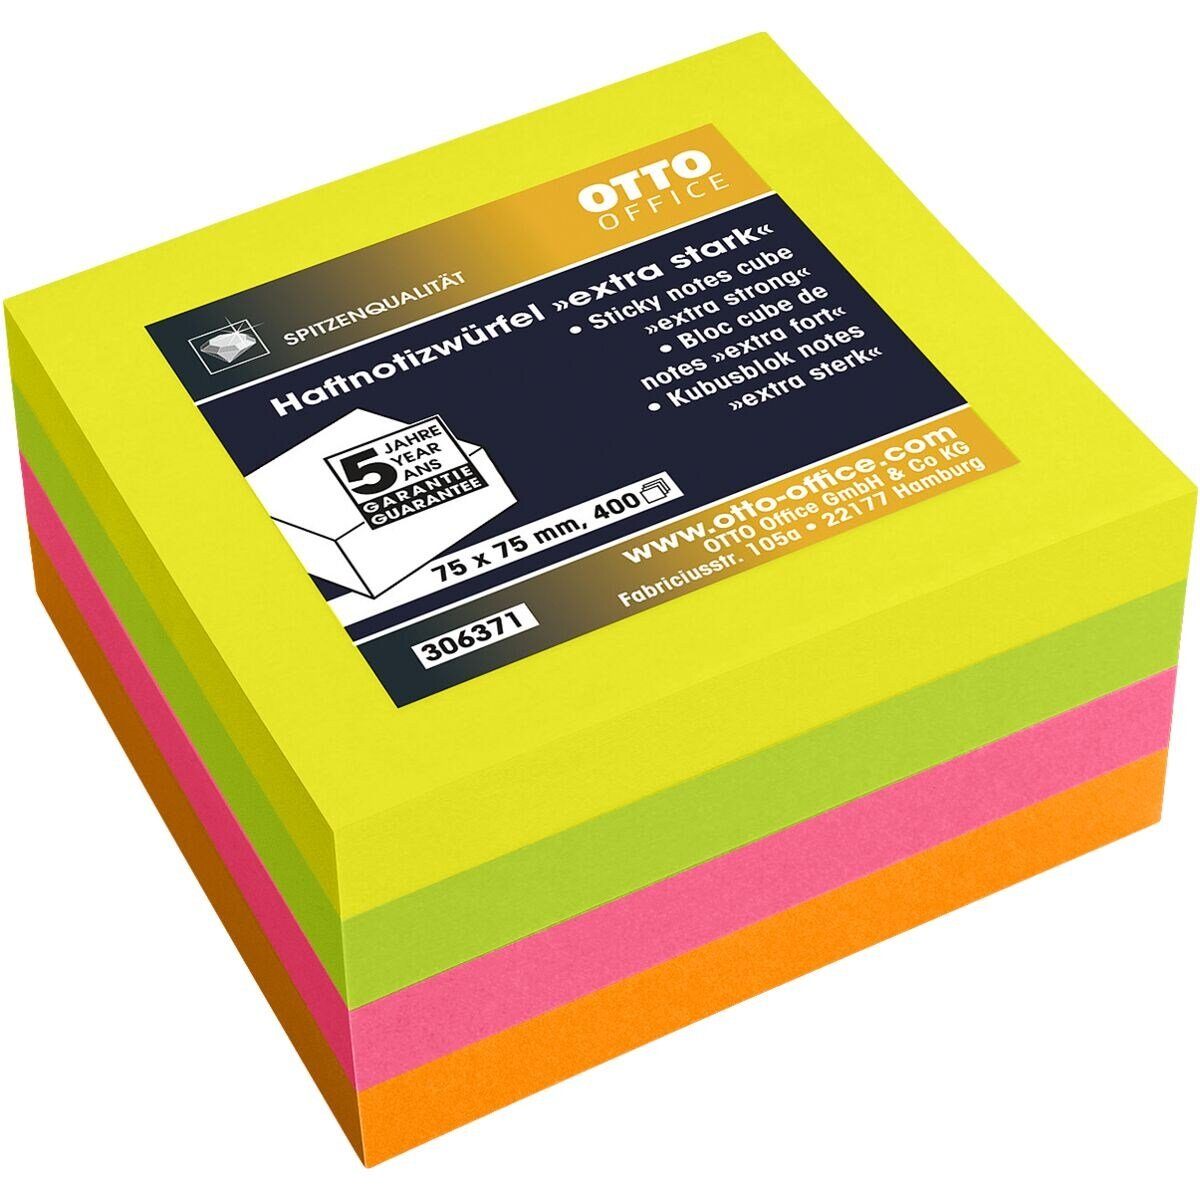 Otto Office Premium Haftnotizblock extra stark, 7,5x7,5 cm, ablösbar und wiederholt selbstklebend